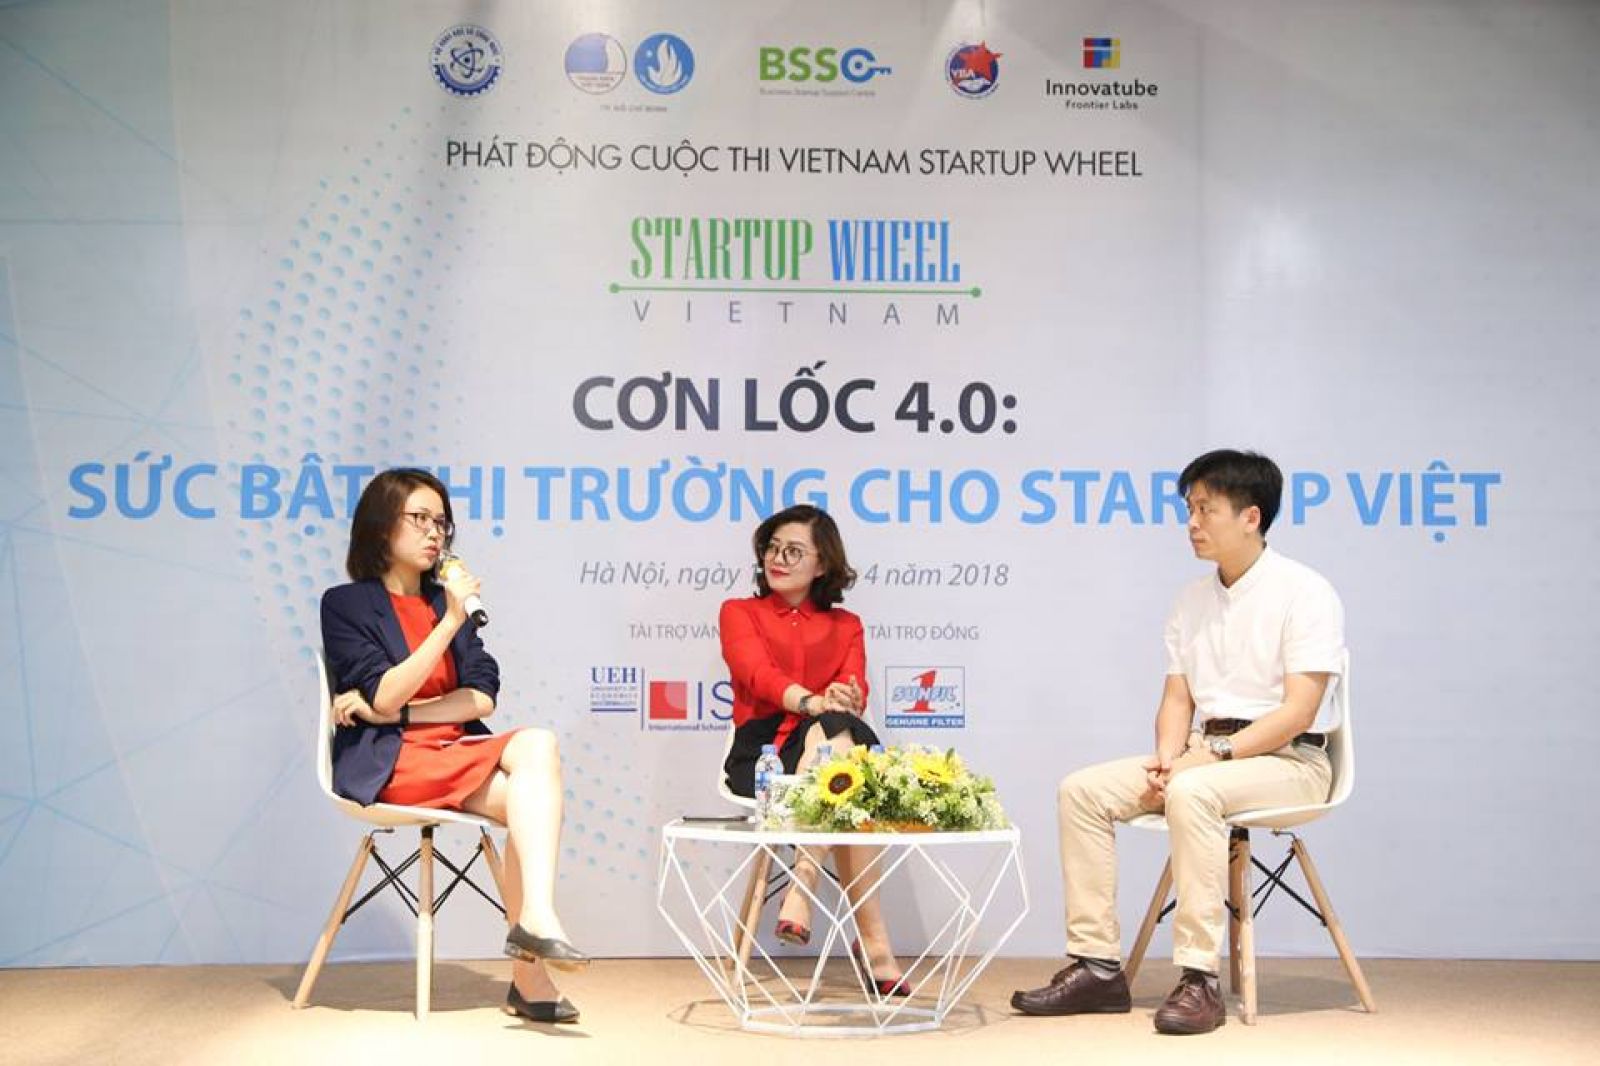 Sức bật thị trường cho start-up Việt trong thời kỳ 4.0